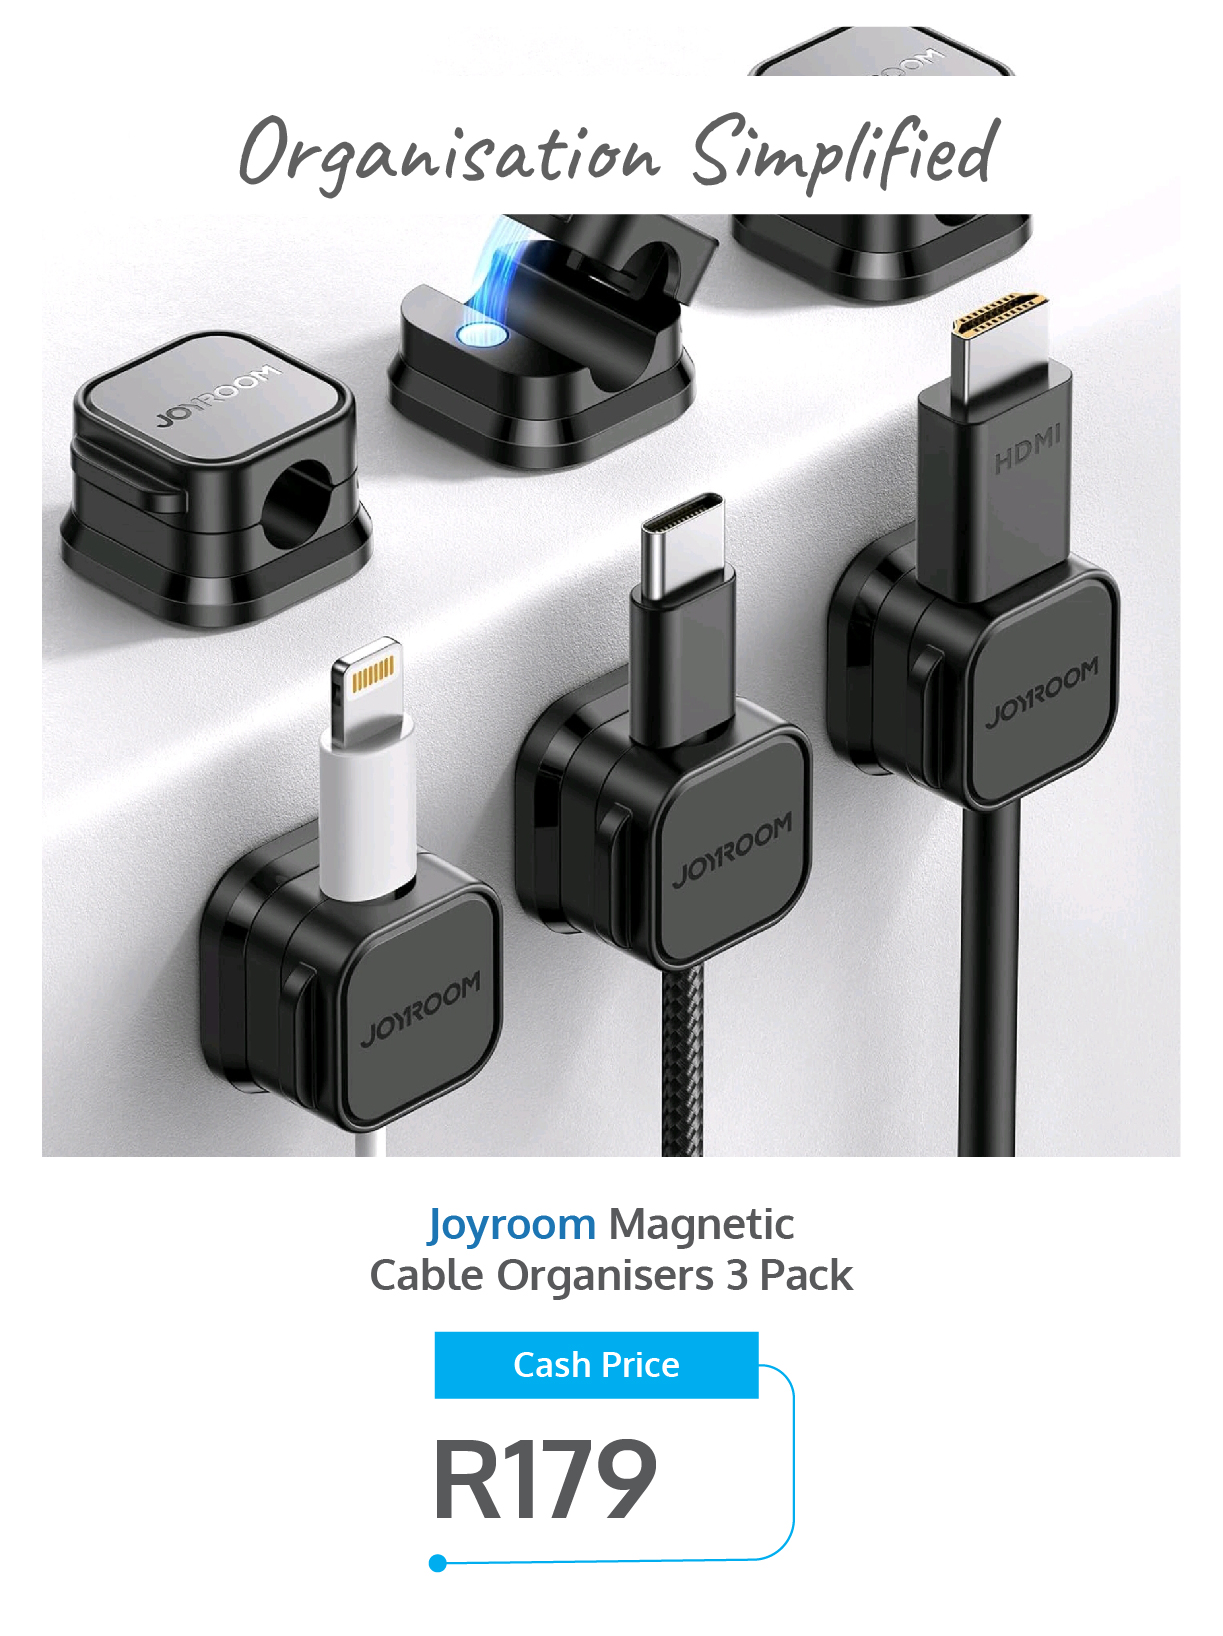 Joyroom Magnetic Cable Organiser - Prepaid hero deal - April